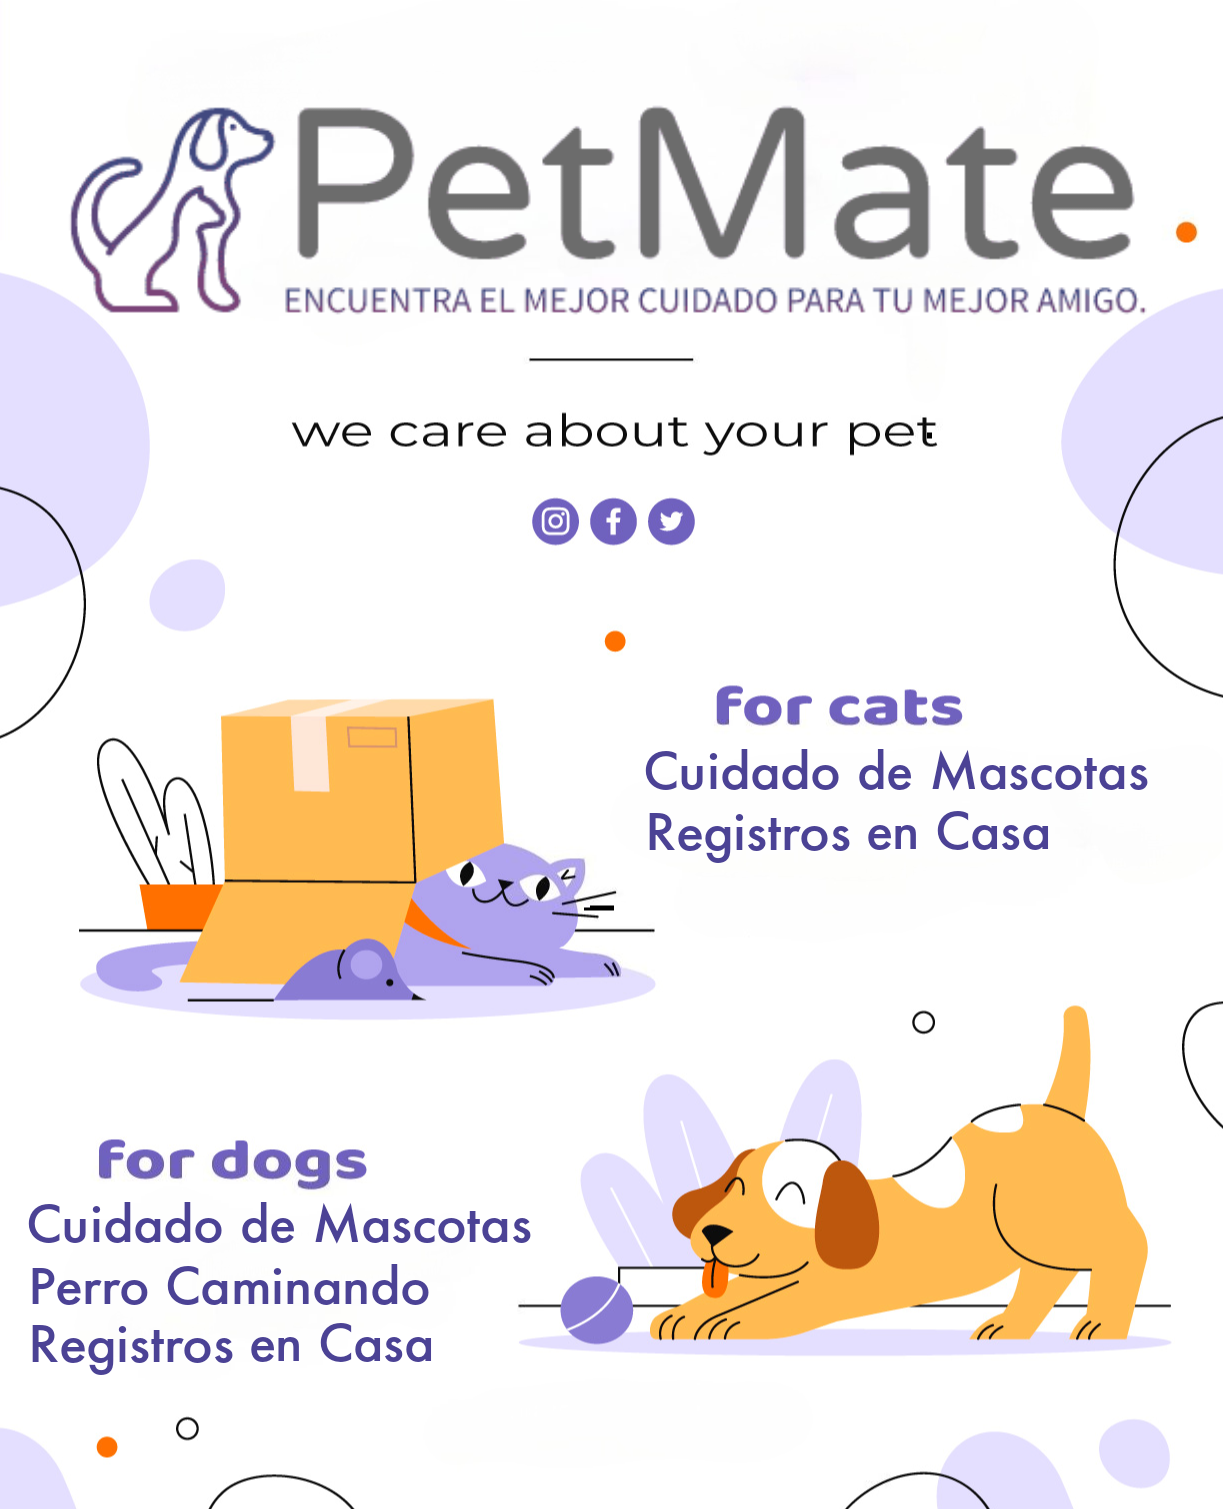 Pet services